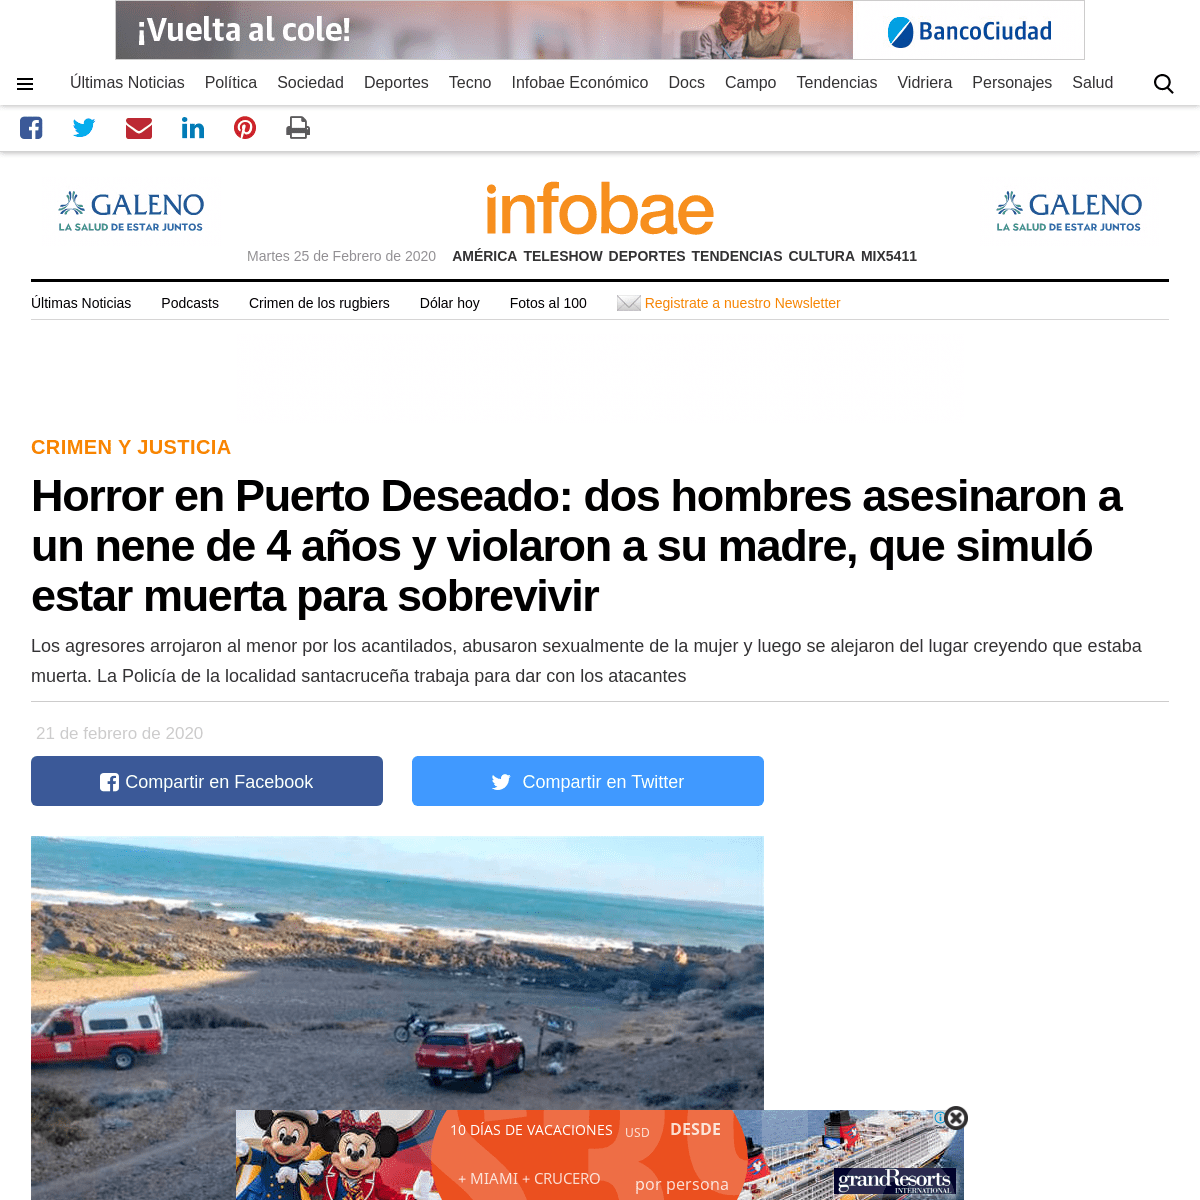 A complete backup of www.infobae.com/sociedad/policiales/2020/02/21/horror-en-puerto-deseado-dos-hombres-asesinaron-a-un-nene-de